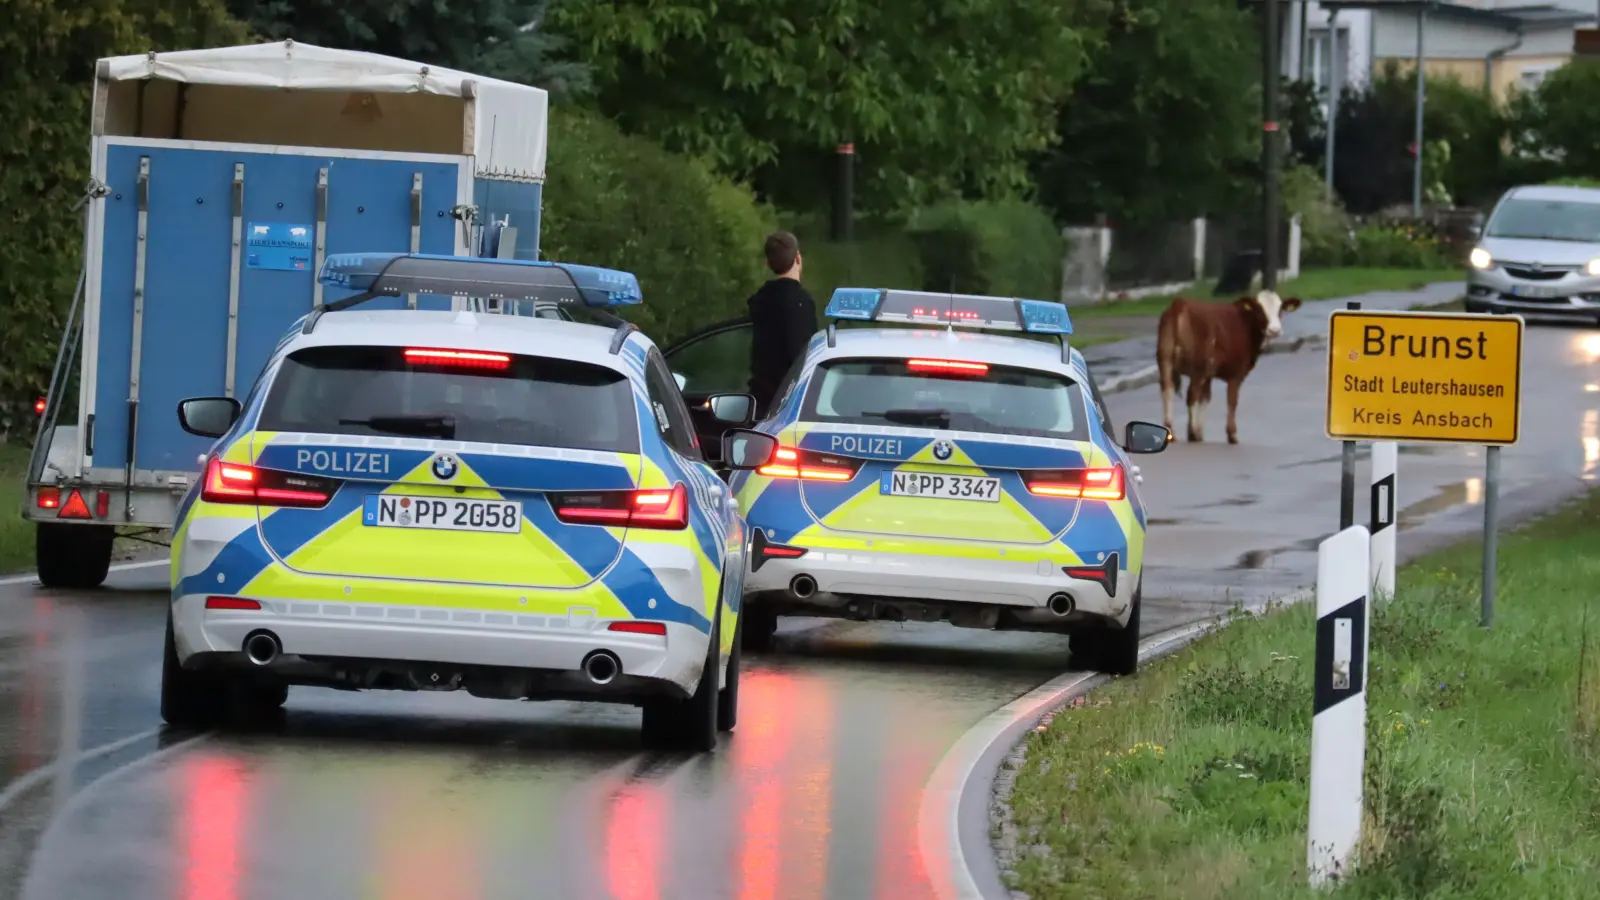 Der Jungbulle bewegte sich zeitweilig in Brunst - die Polizei blieb auf den Fersen. (Foto: Gudrun Bayer)